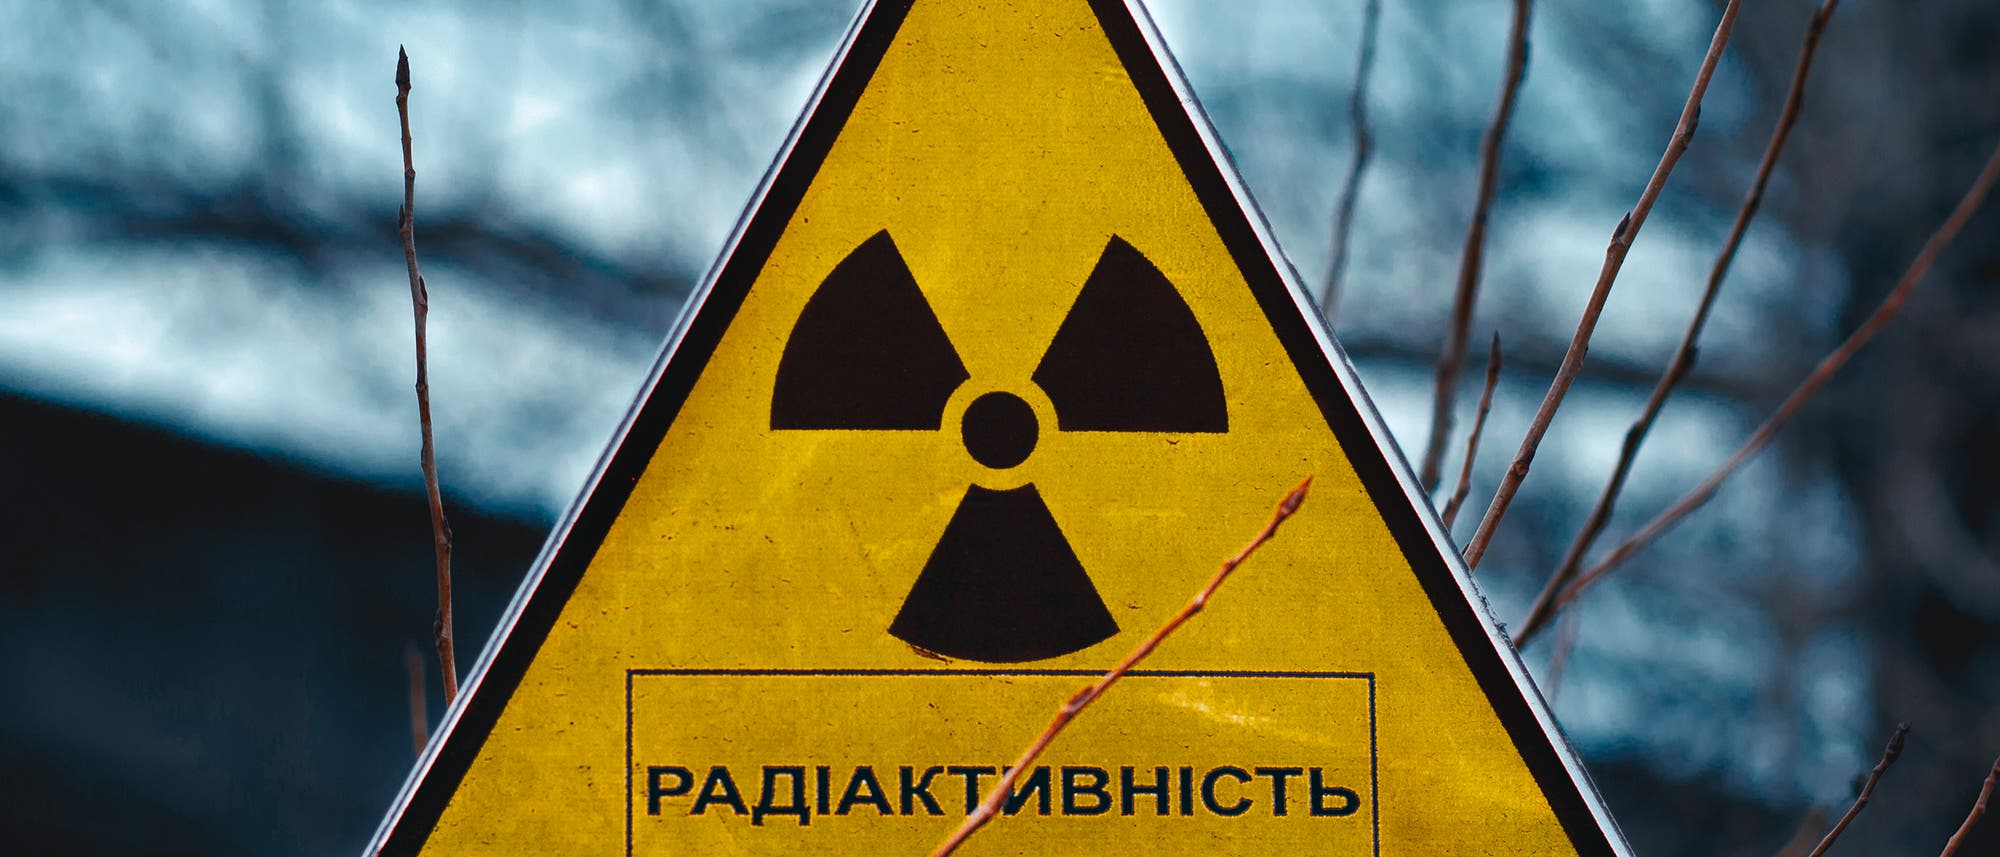 Achtung: Radioaktivität